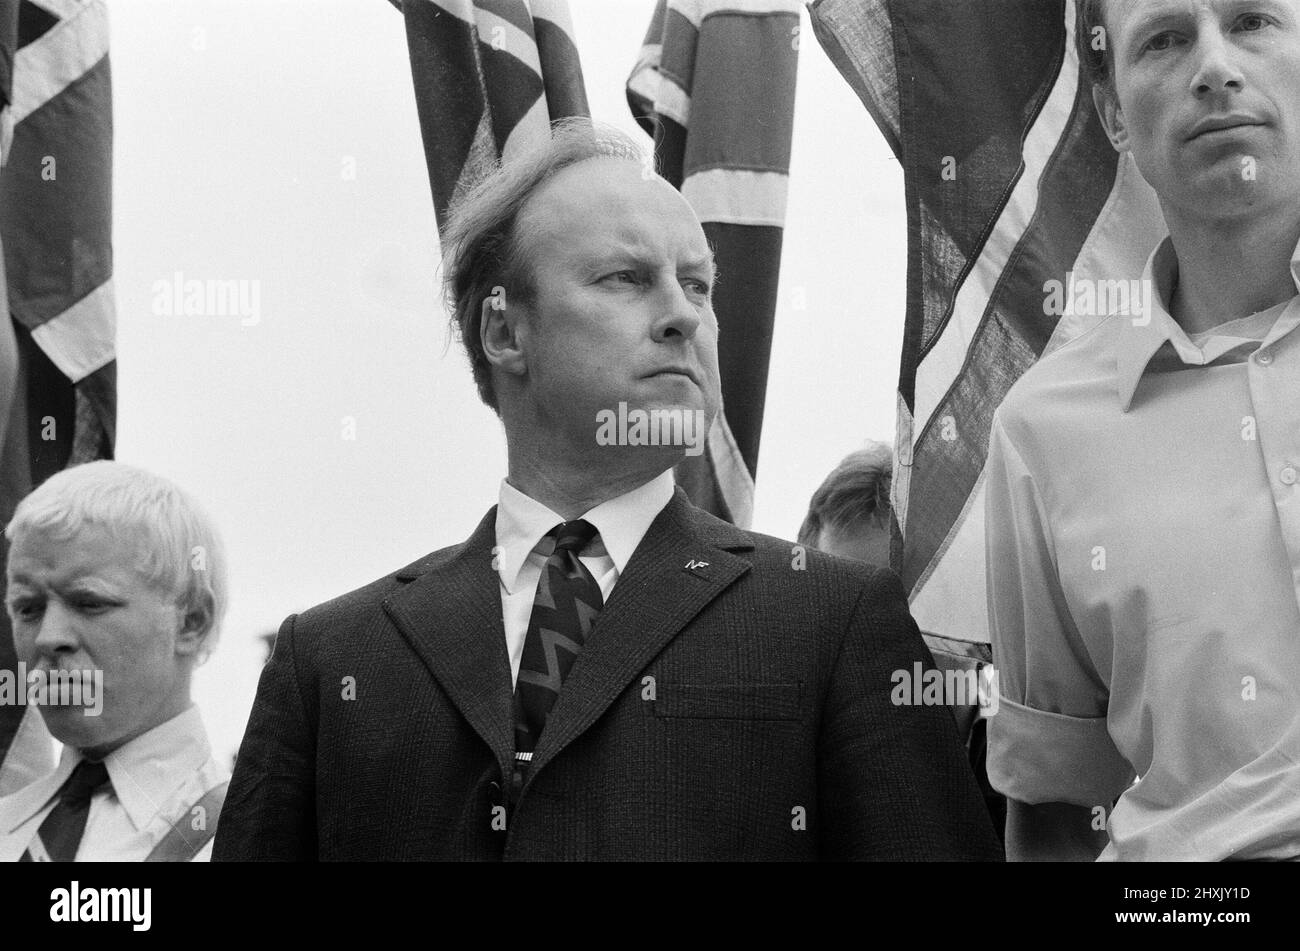 Bataille de Lewisham, sud de Londres, samedi 13th août 1977. Le rassemblement du Front national de New Cross à Lewisham est perturbé par des contre-manifestations et conduit à des affrontements violents avec les policiers et les manifestants anti-racisme. En photo, John Tyndall, chef du Front national. Banque D'Images